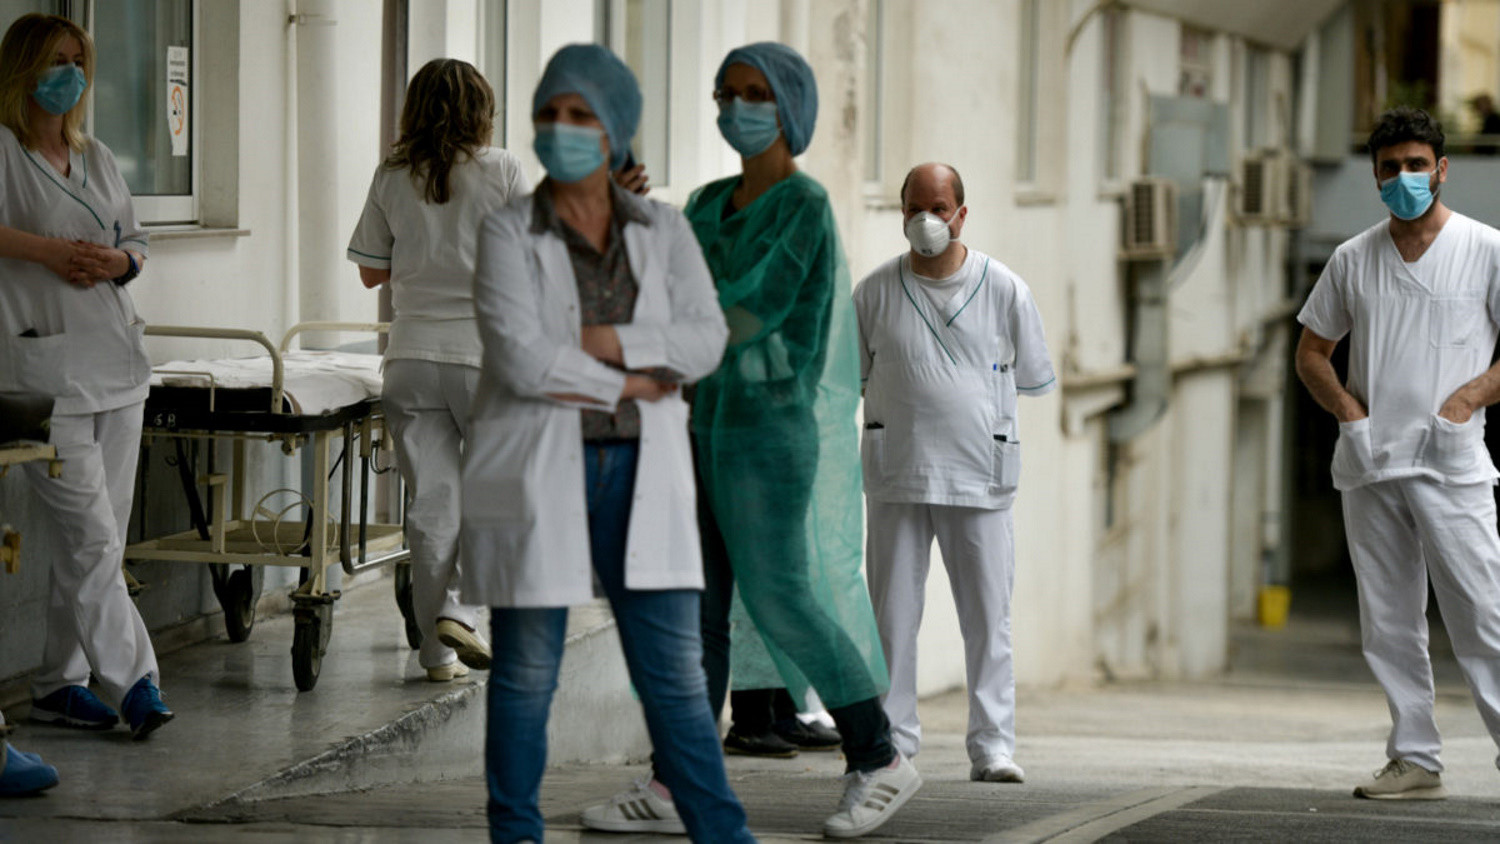 Οι νοσοκομειακοί γιατροί κατεβαίνουν σε 24ωρη απεργία εν μέσω πανδημίας | Ειδησεις